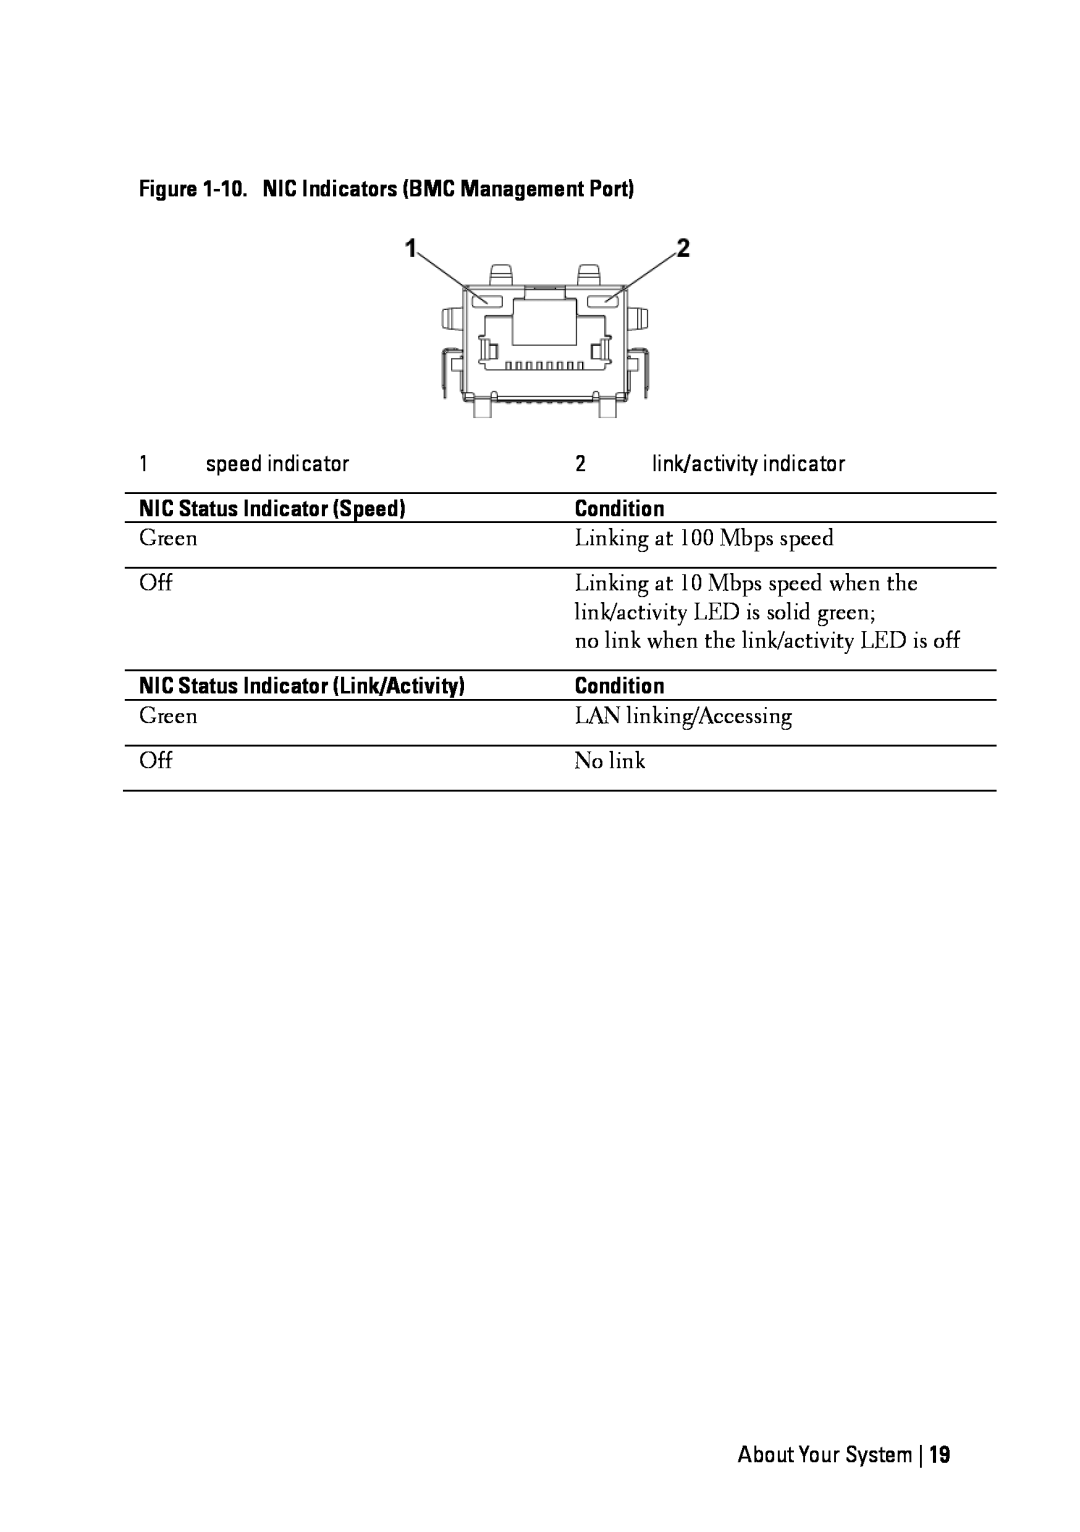 Dell C6145 manual 10. NIC Indicators BMC Management Port, NIC Status Indicator Speed, Condition 